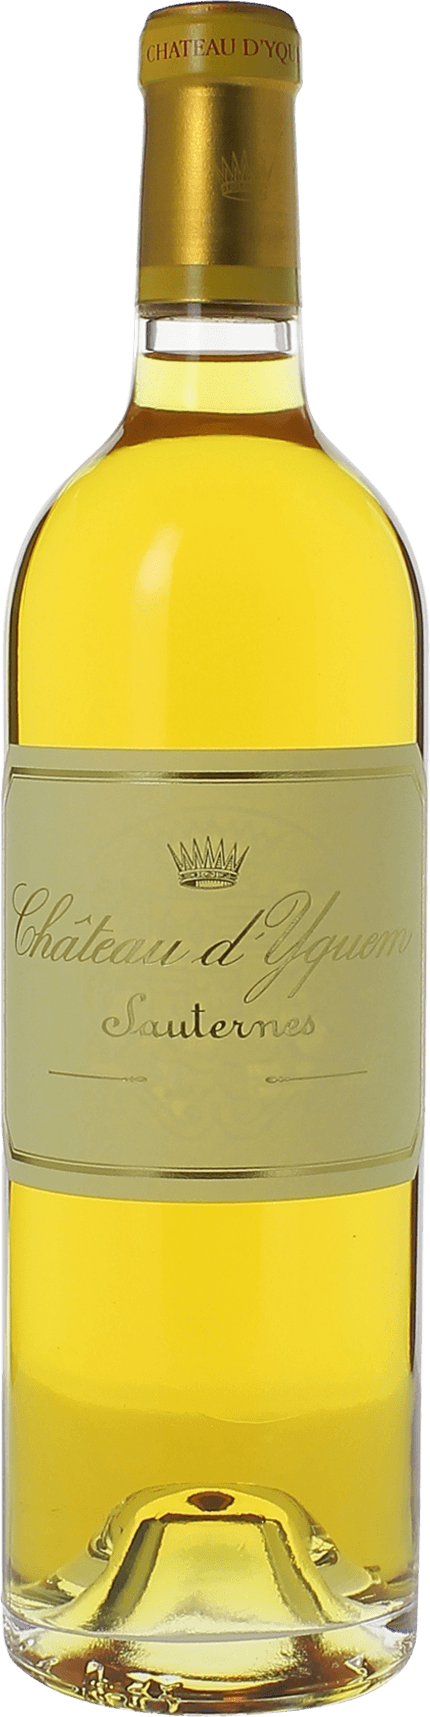 Yquem 2014 1er Grand cru class Sauternes, Bordeaux blanc